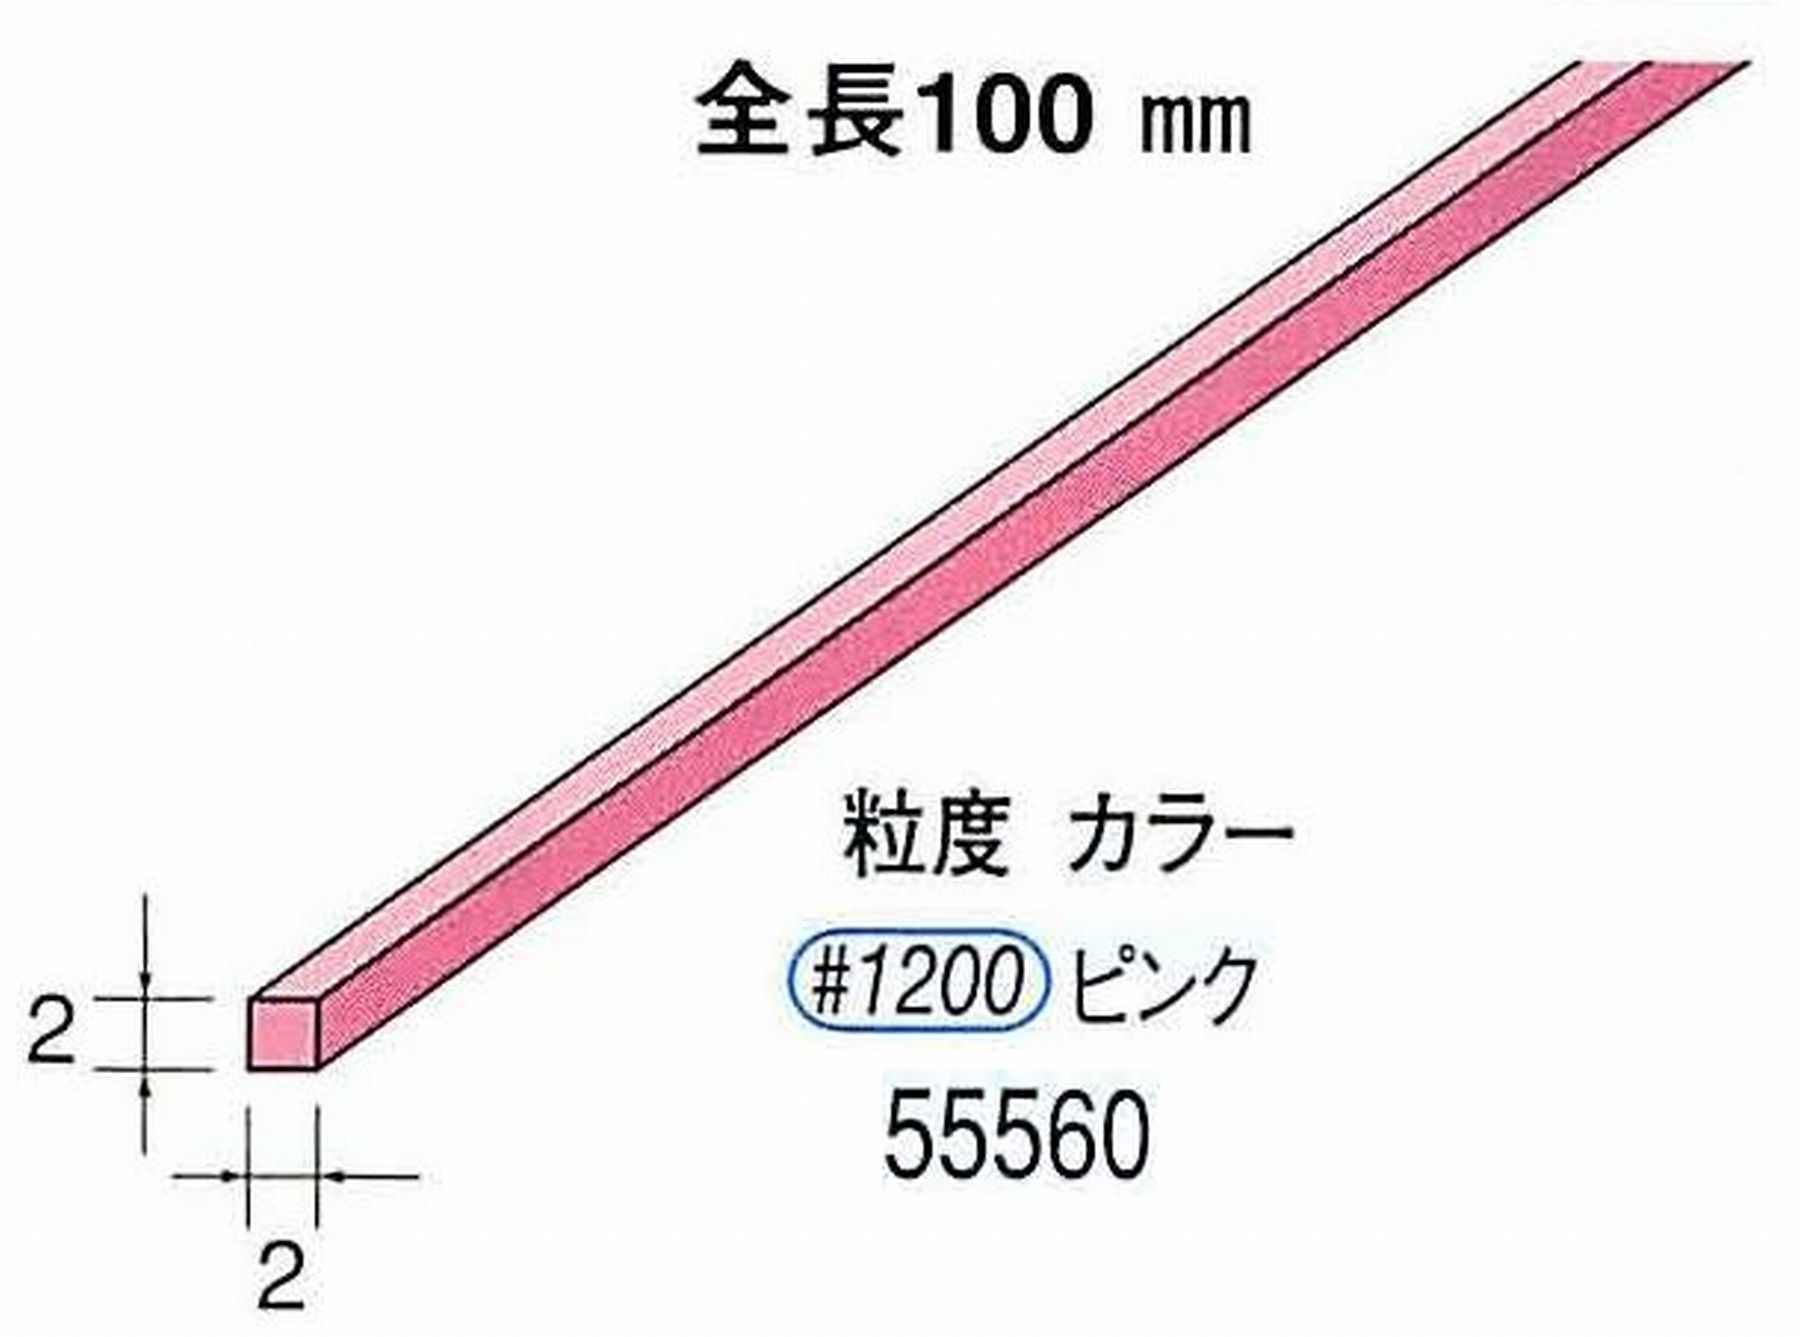 ナカニシ/NAKANISHI セラファイバー砥石 全長100mm ピンク 55560